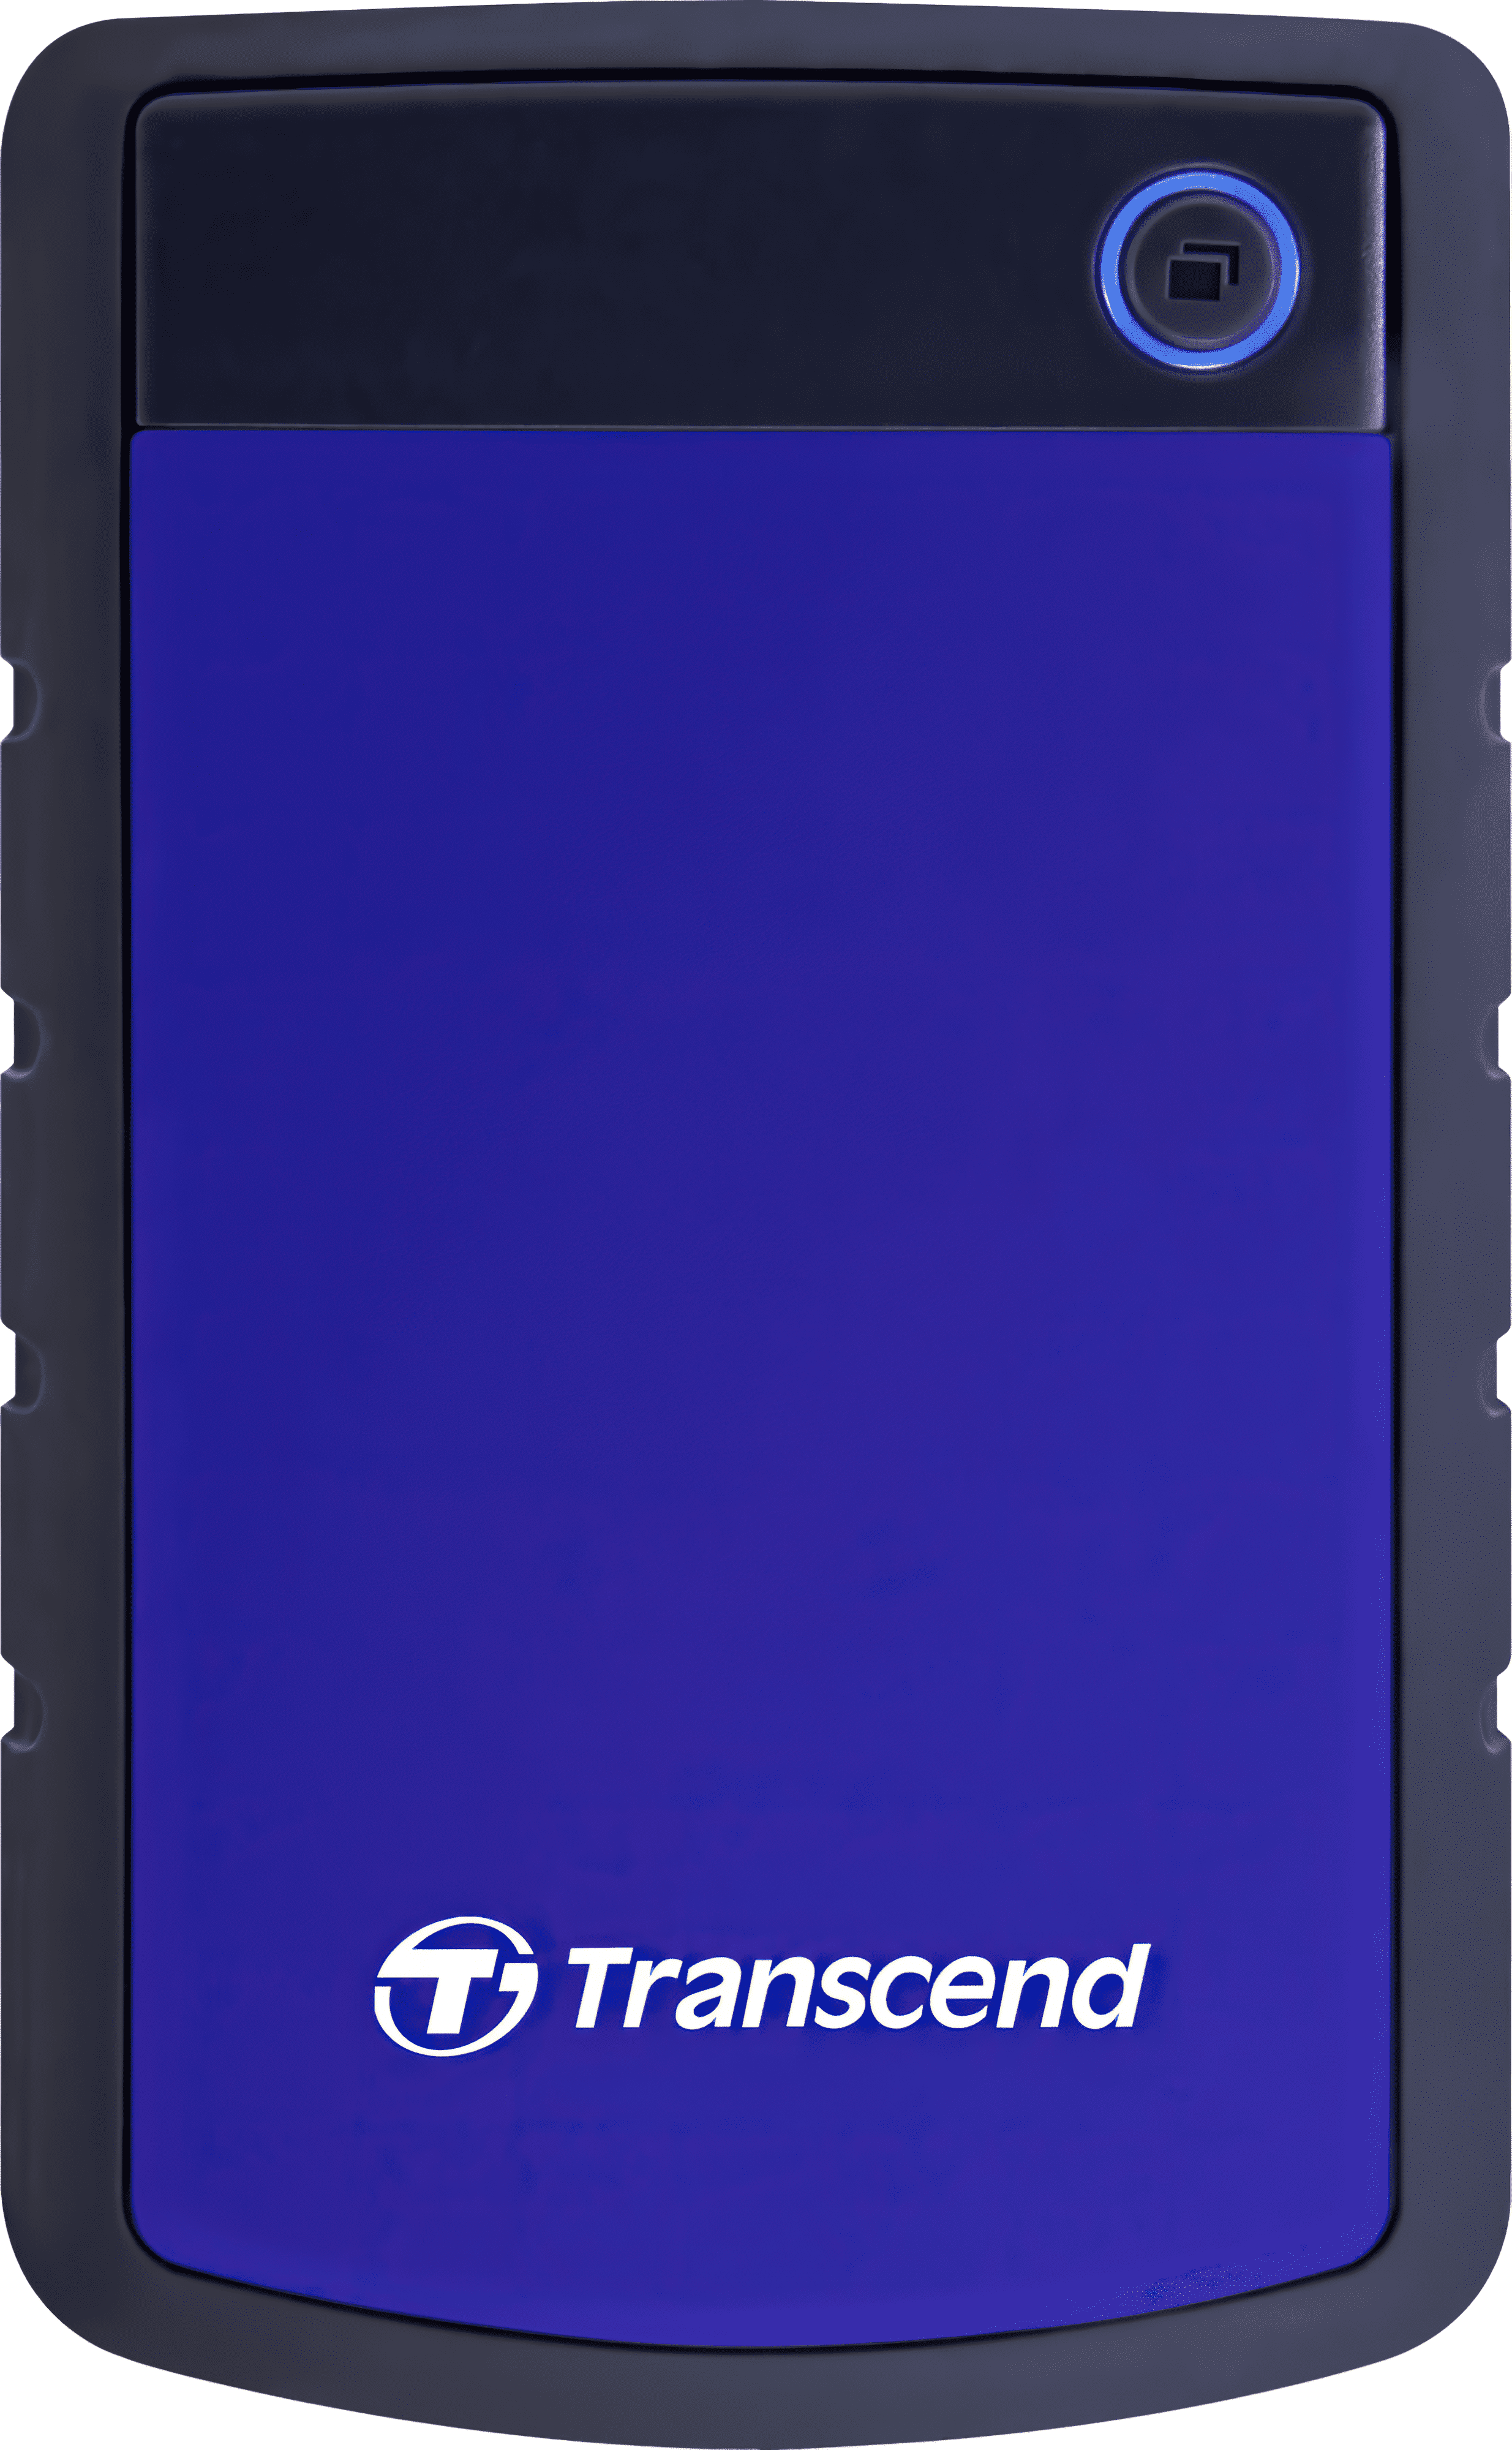 Жесткий диск TRANSCEND StoreJet 2.5" USB 3.1 4TB Gen1 серия H Blue (TS4TSJ25H3B) фото 1